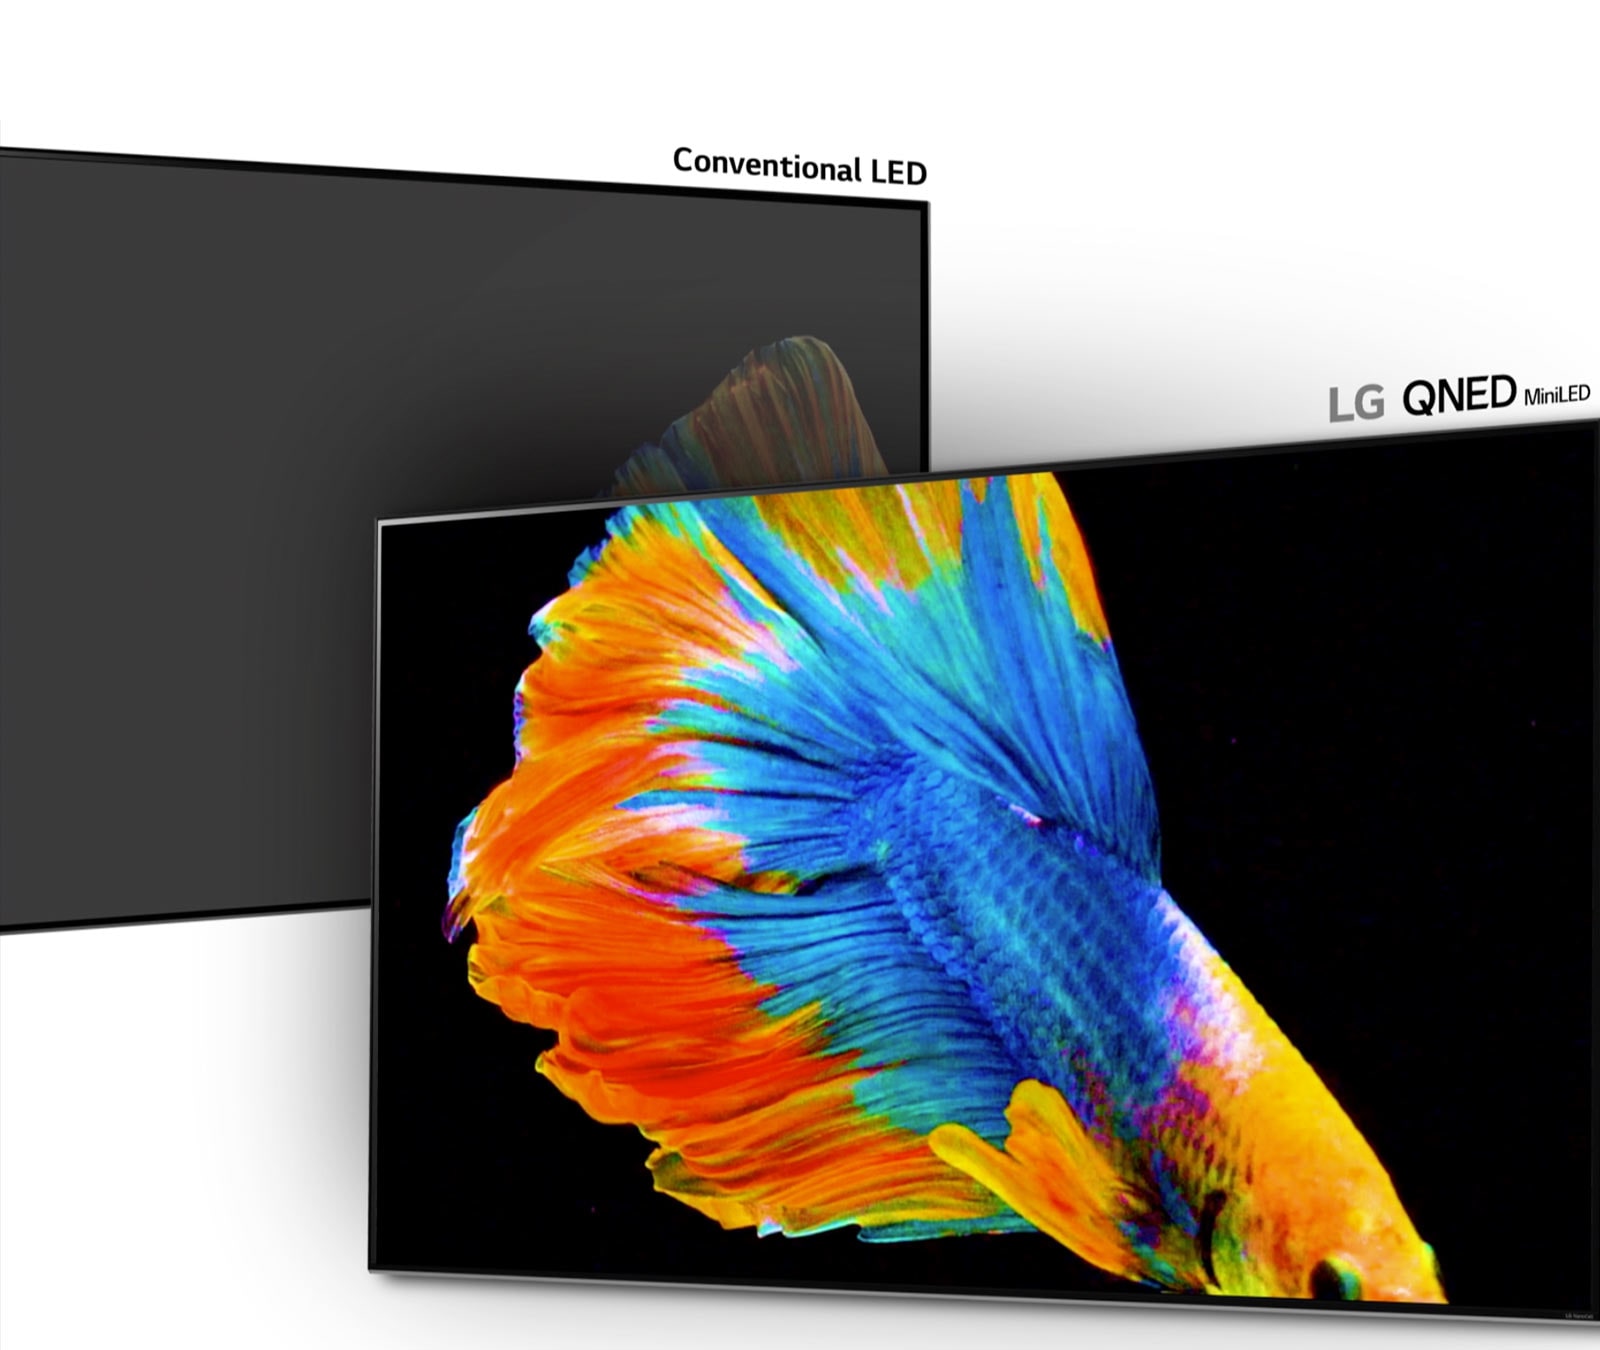 Slika siamske borbene ribe, polovica na običajnem LED zaslonu z manj temnimi območji in slabše črne barve, polovica na mini LED televizorju LG QNED z več temnimi območji in globljo črno (predvajajte video).